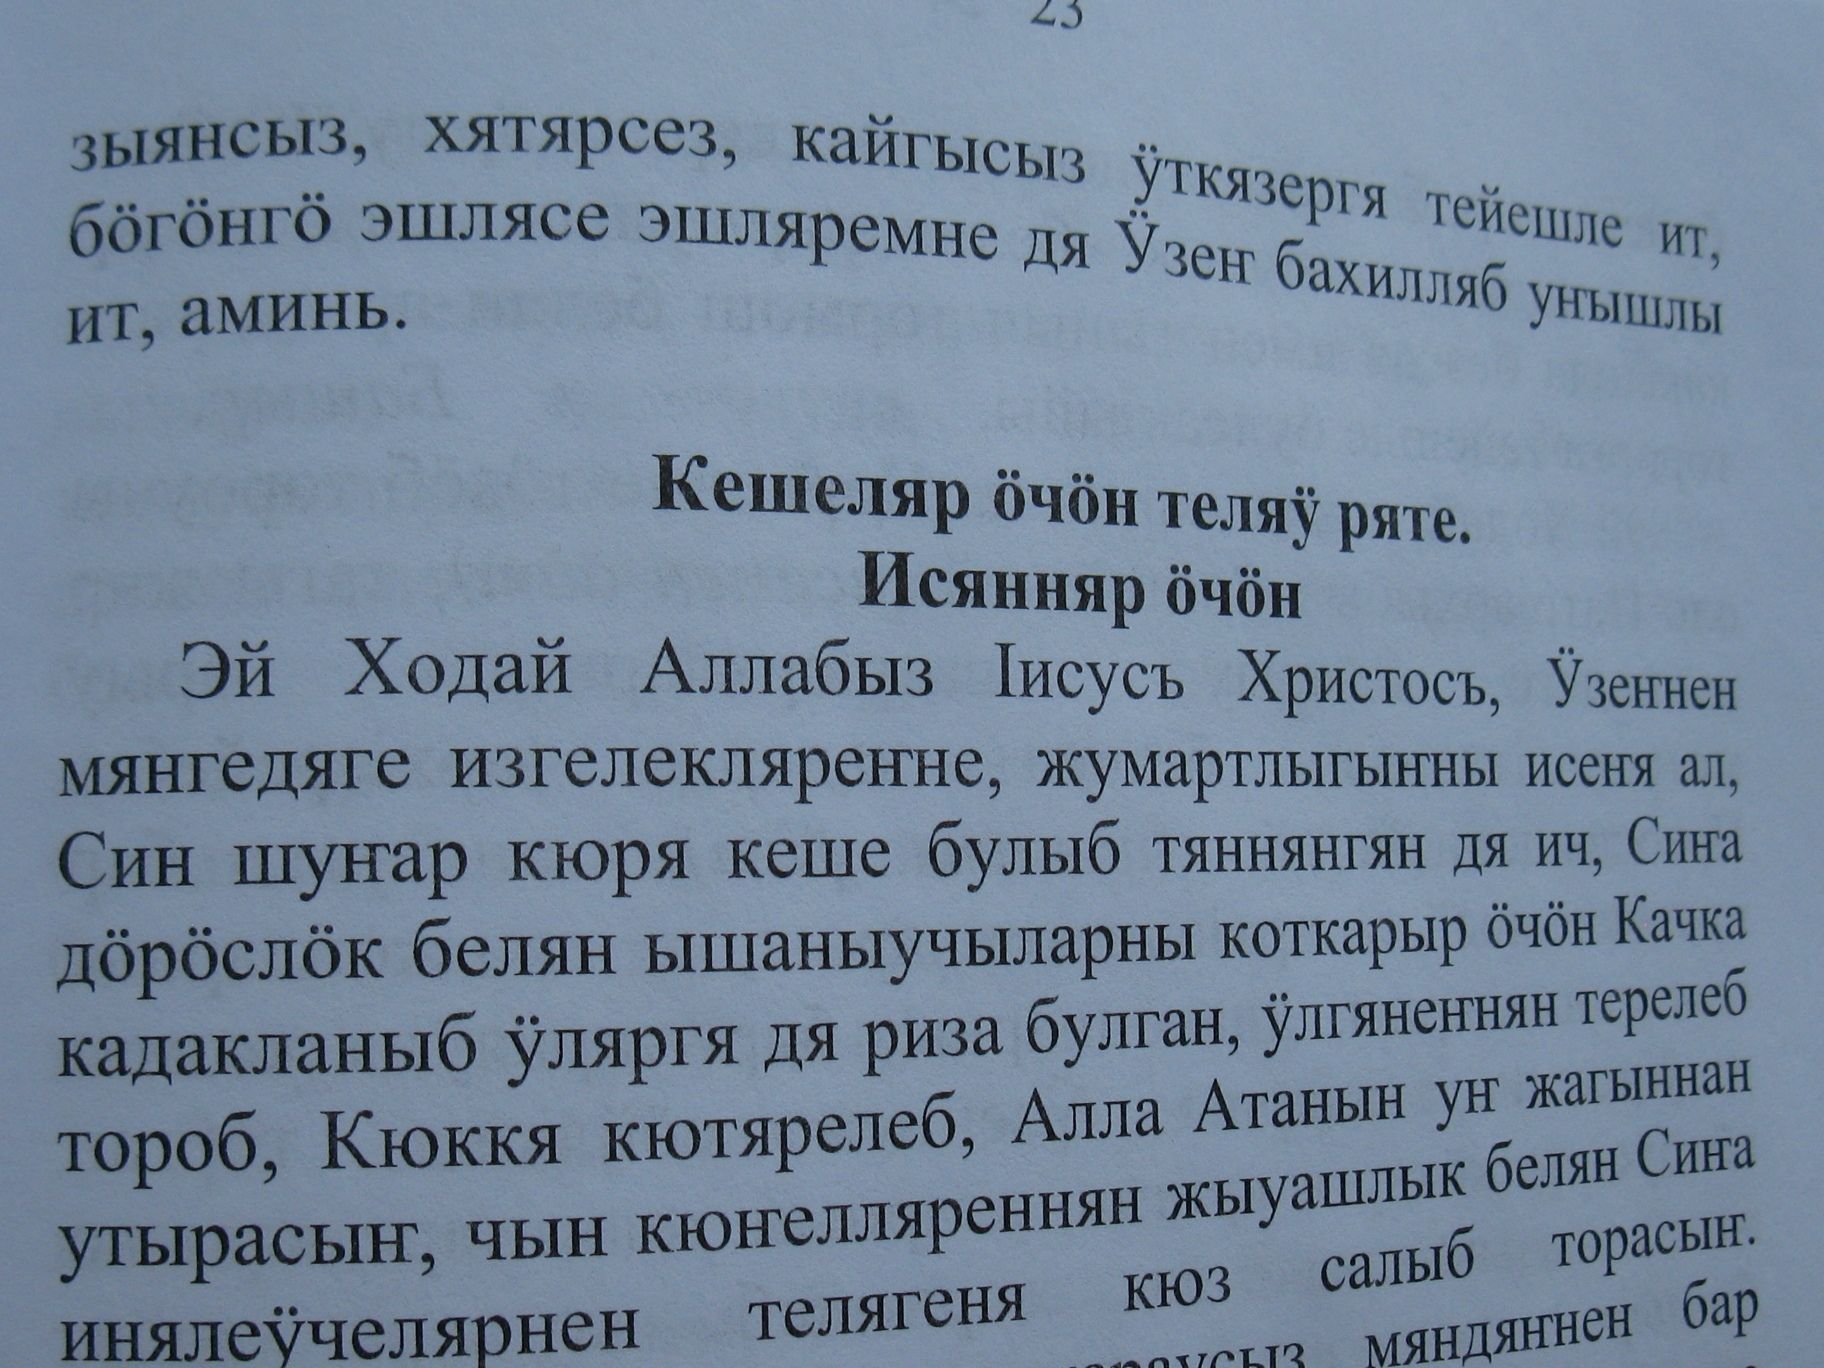 Вышла в свет книга «Большой молитвослов» на церковно-кряшенском языке